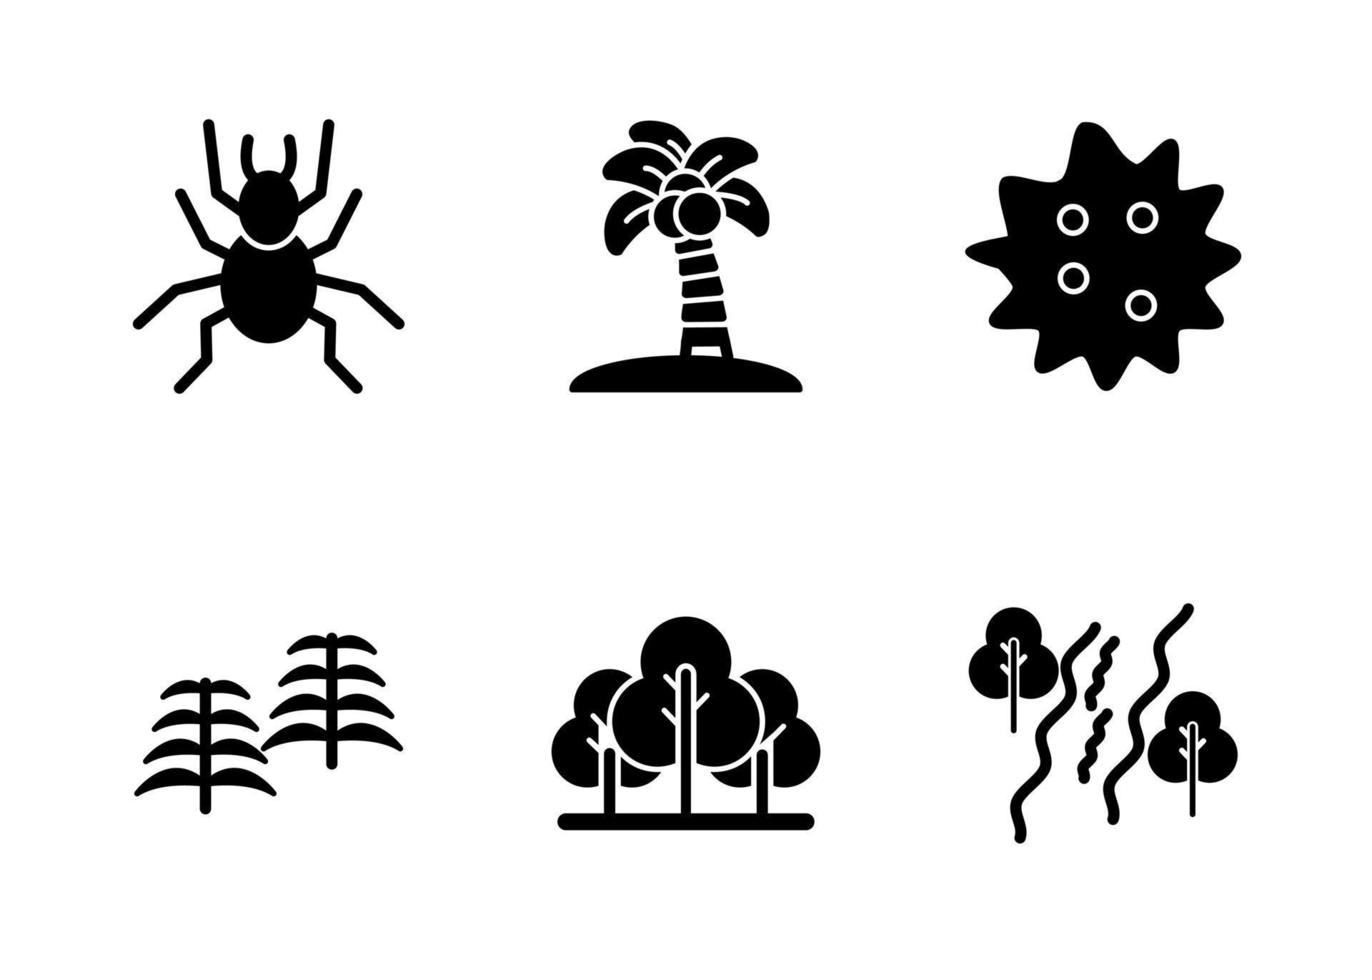 conjunto de ícones vetoriais de floresta tropical vetor